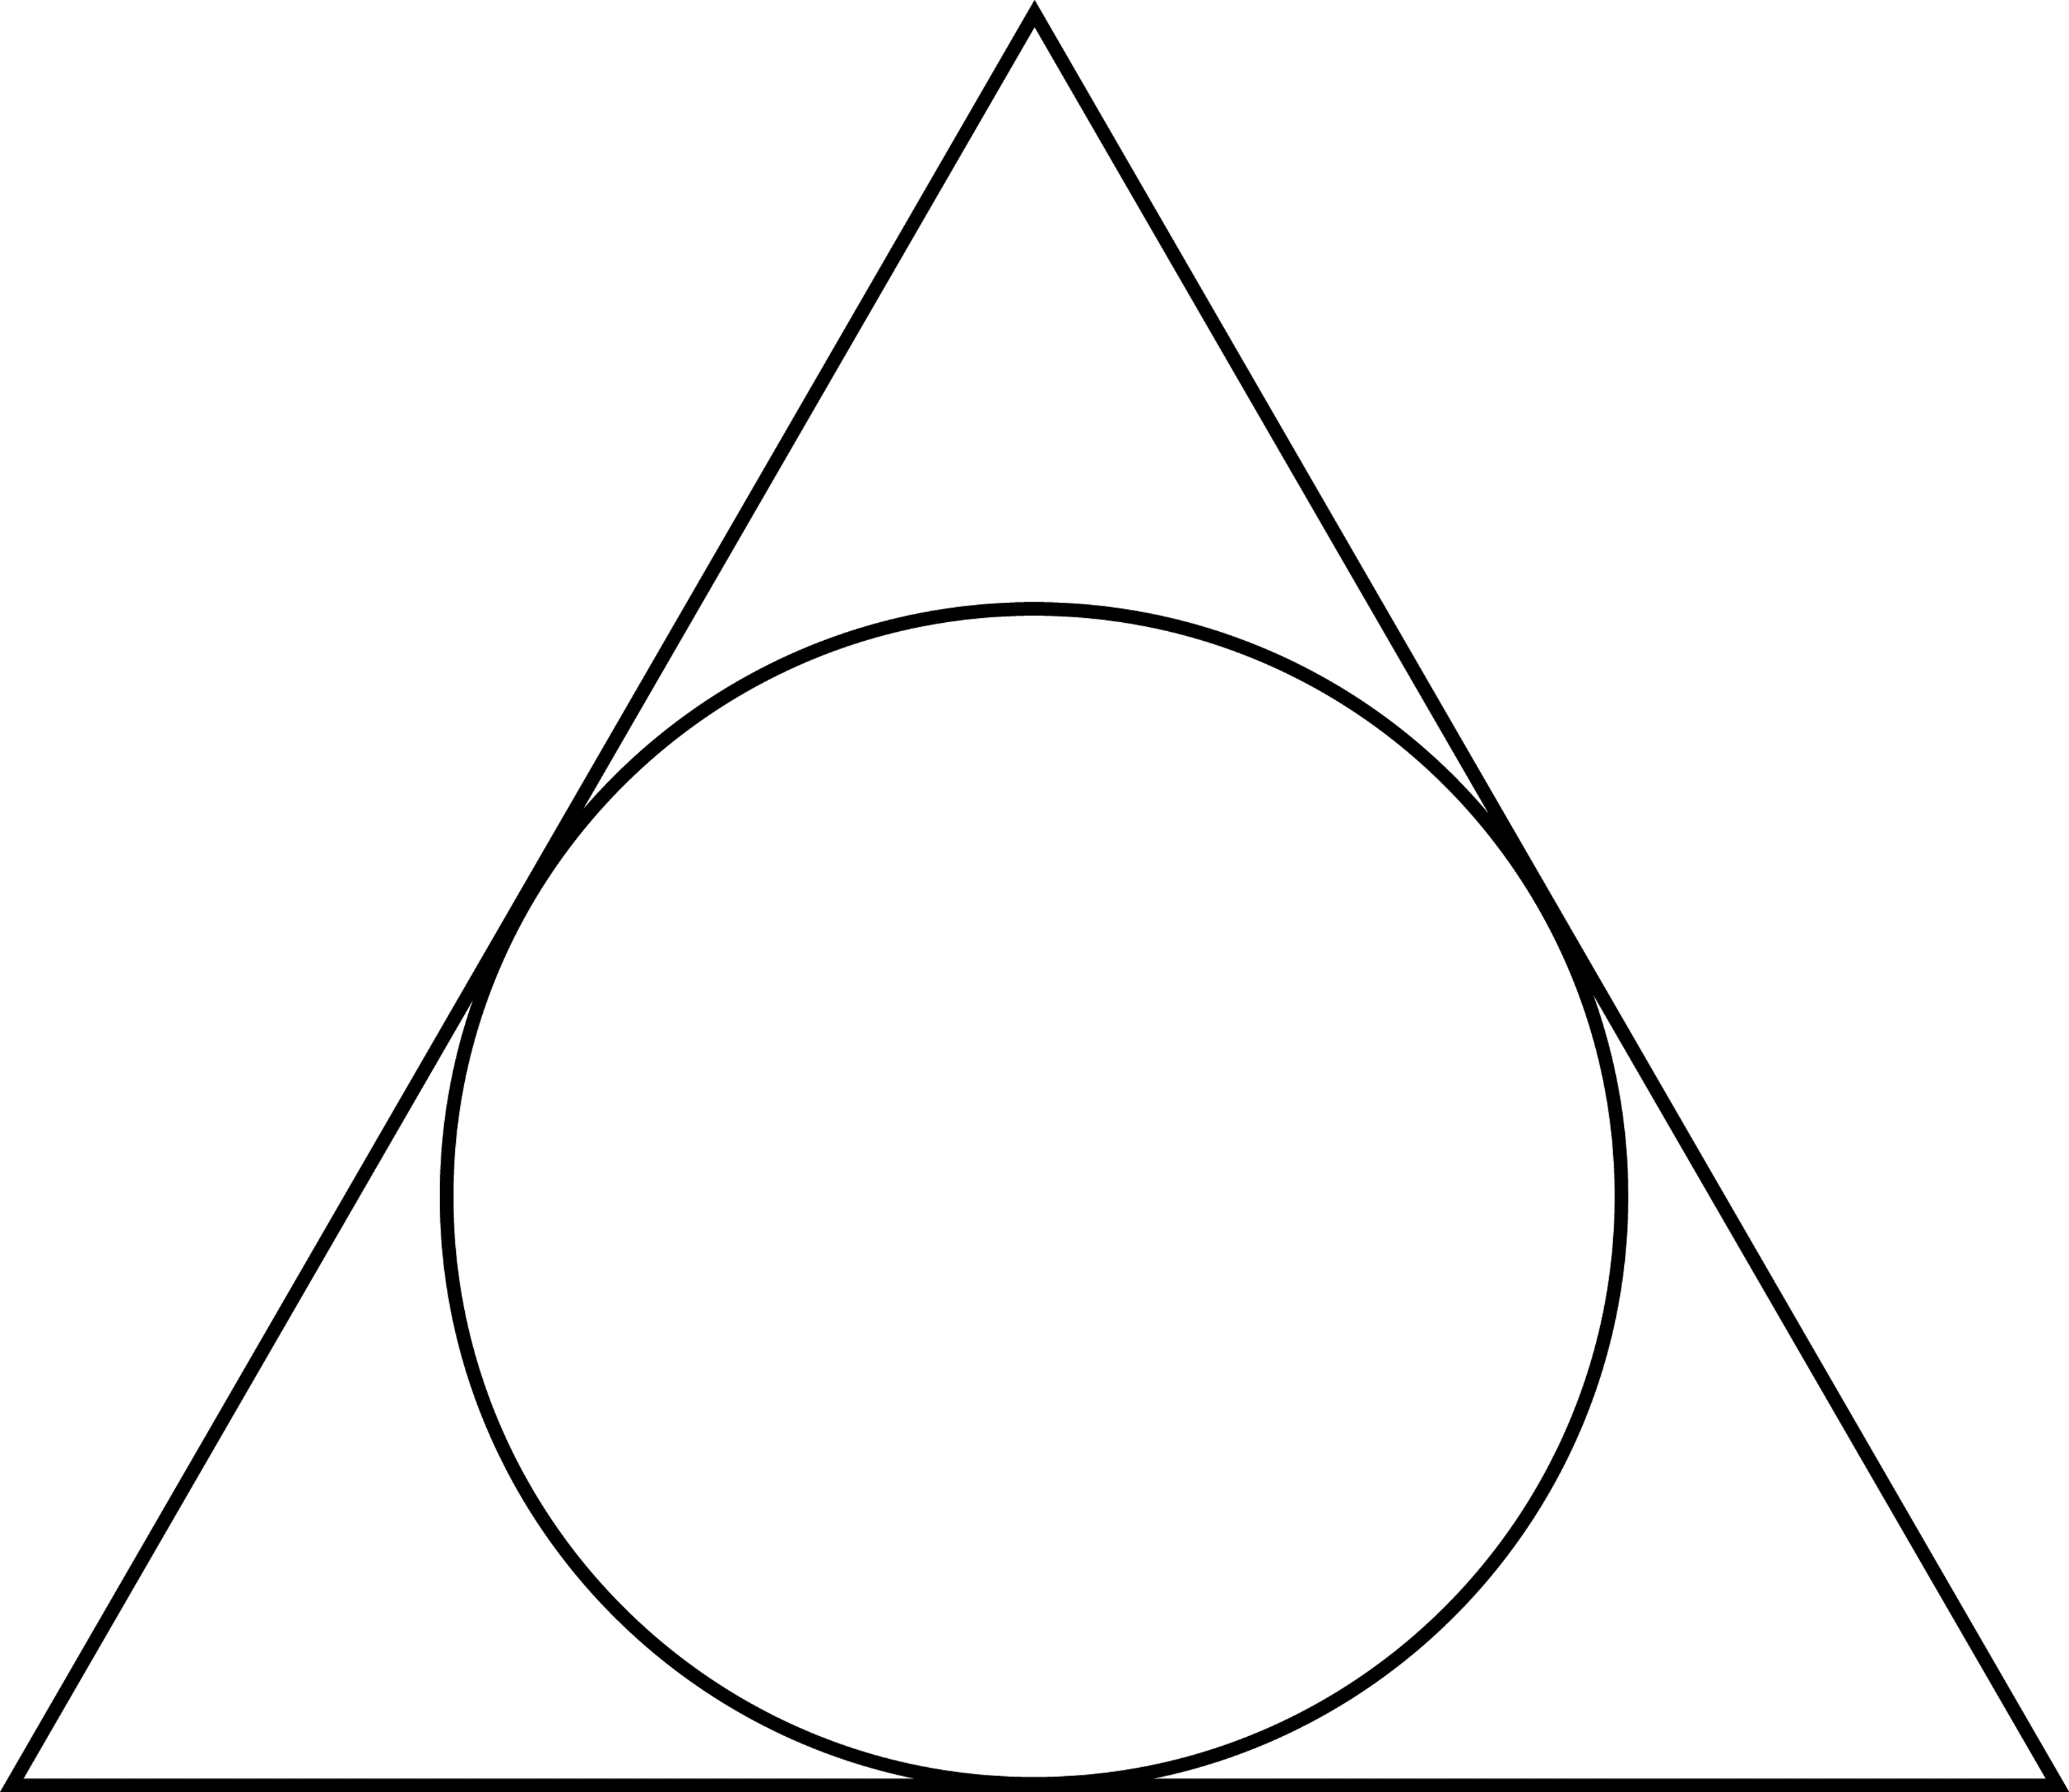 Шар формы треугольника